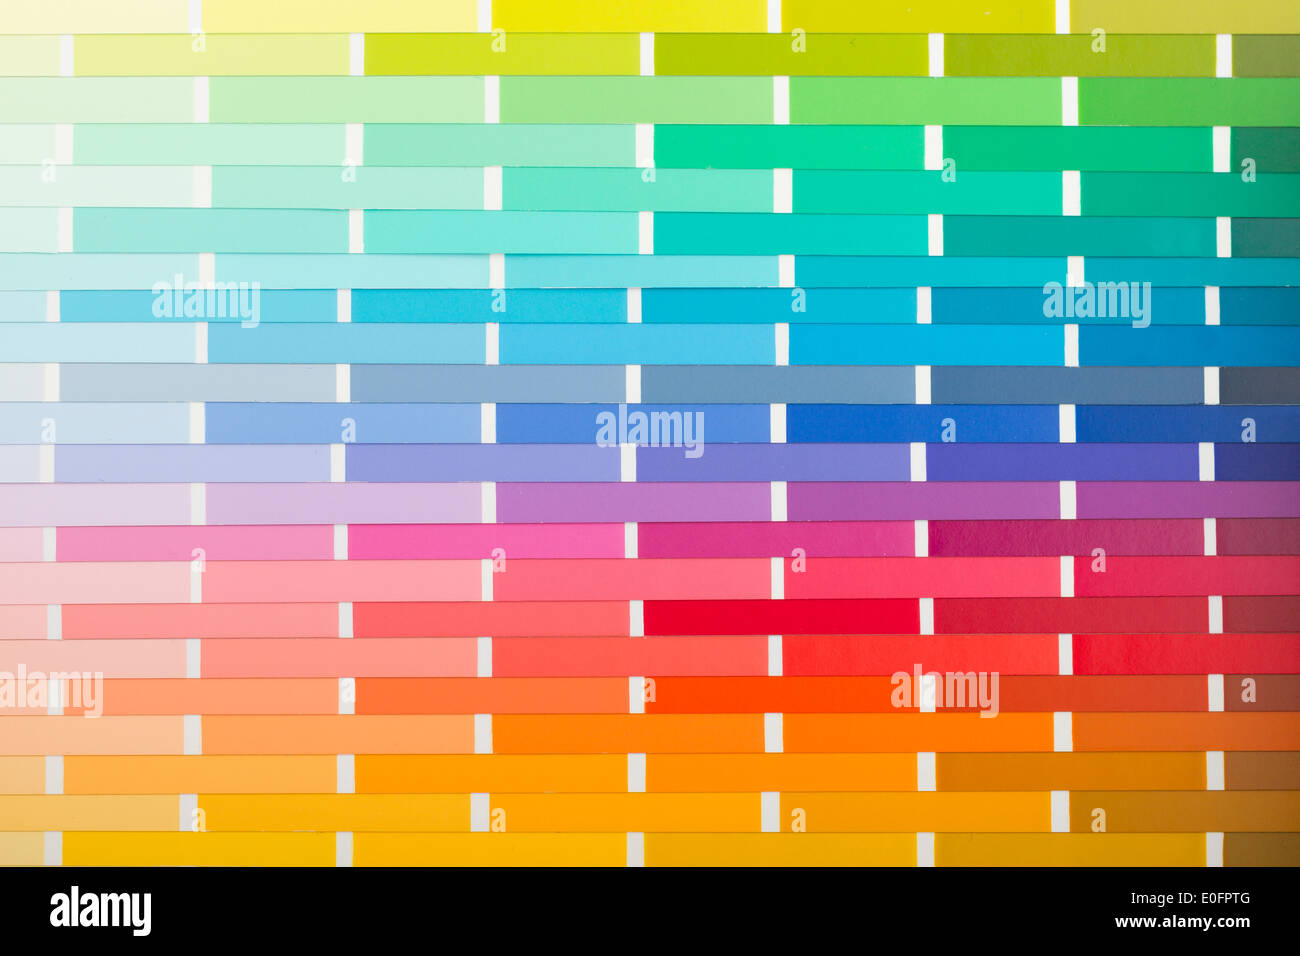 Vektor-Farbkarte (Papier) mit verschiedenen Farben Stockfoto